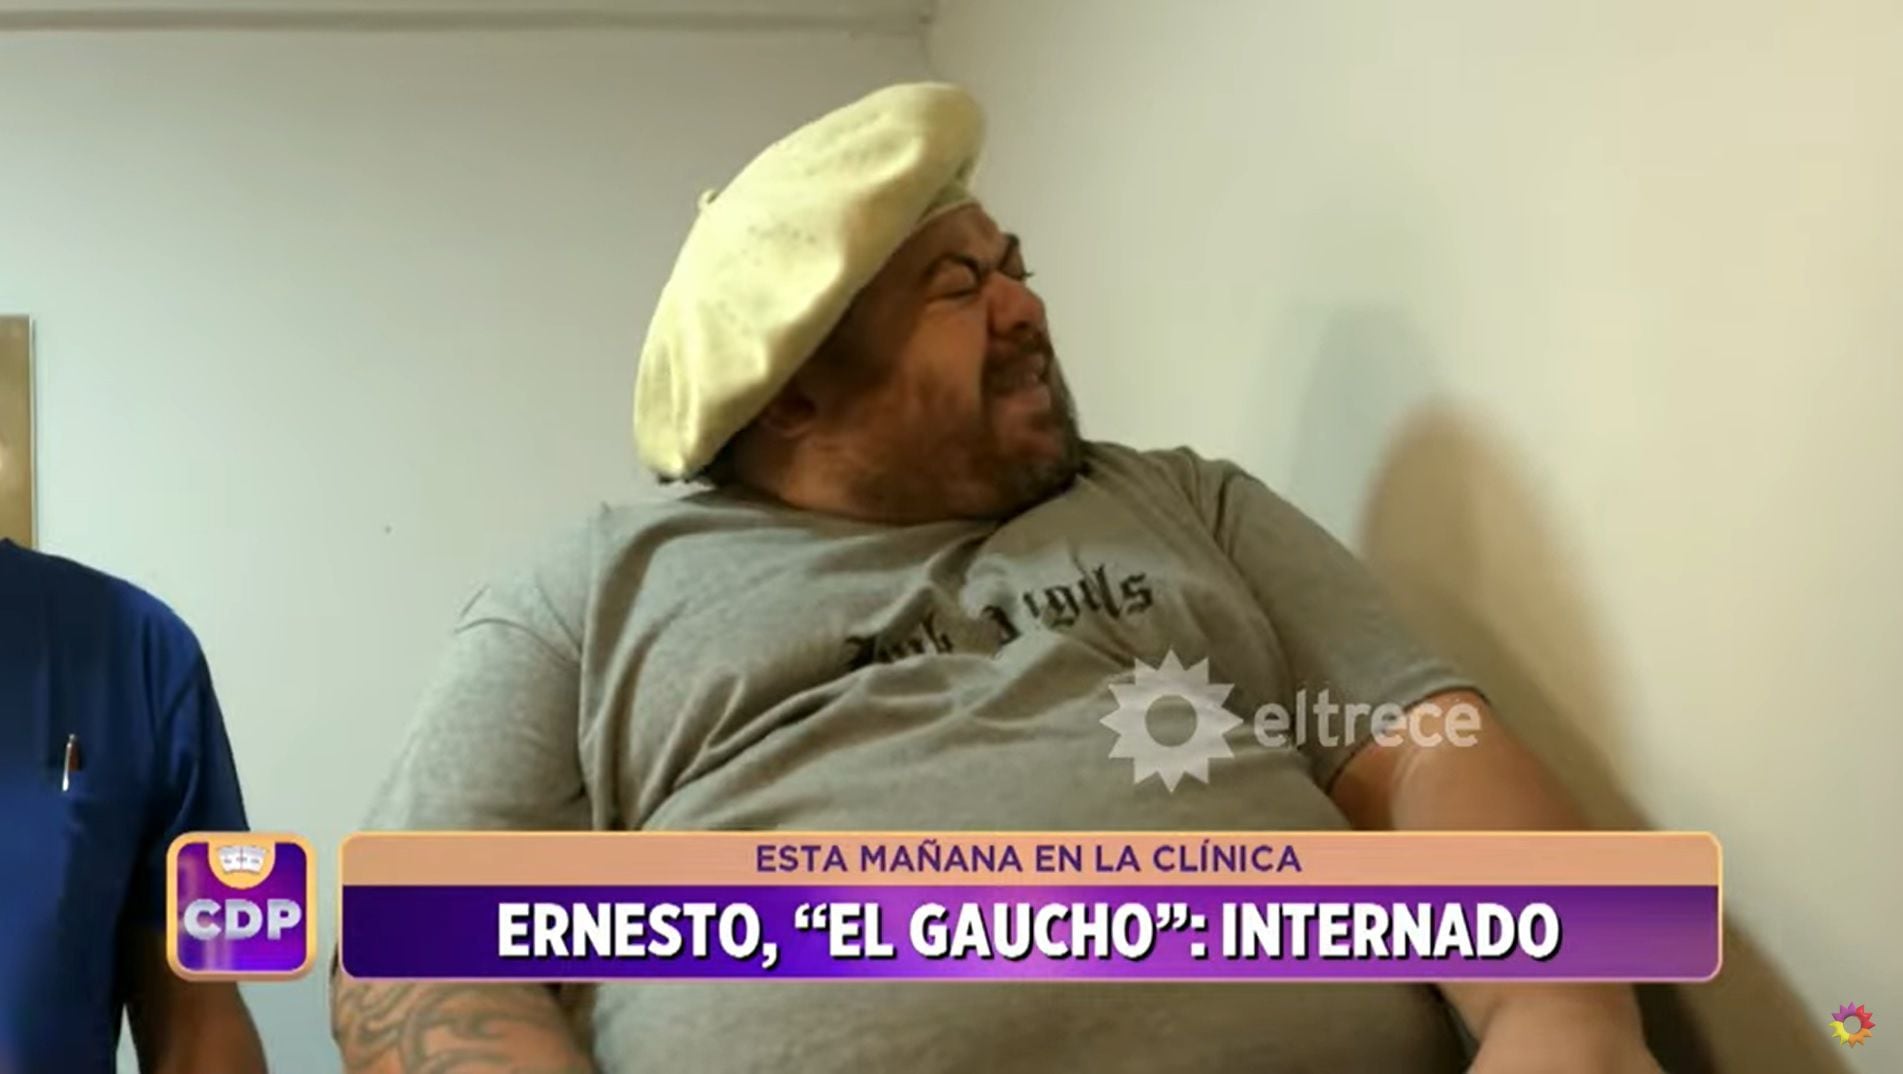 Ernesto, participante de “Cuestión de Peso” quedó internado el primer día de tratamiento. Captura del video.